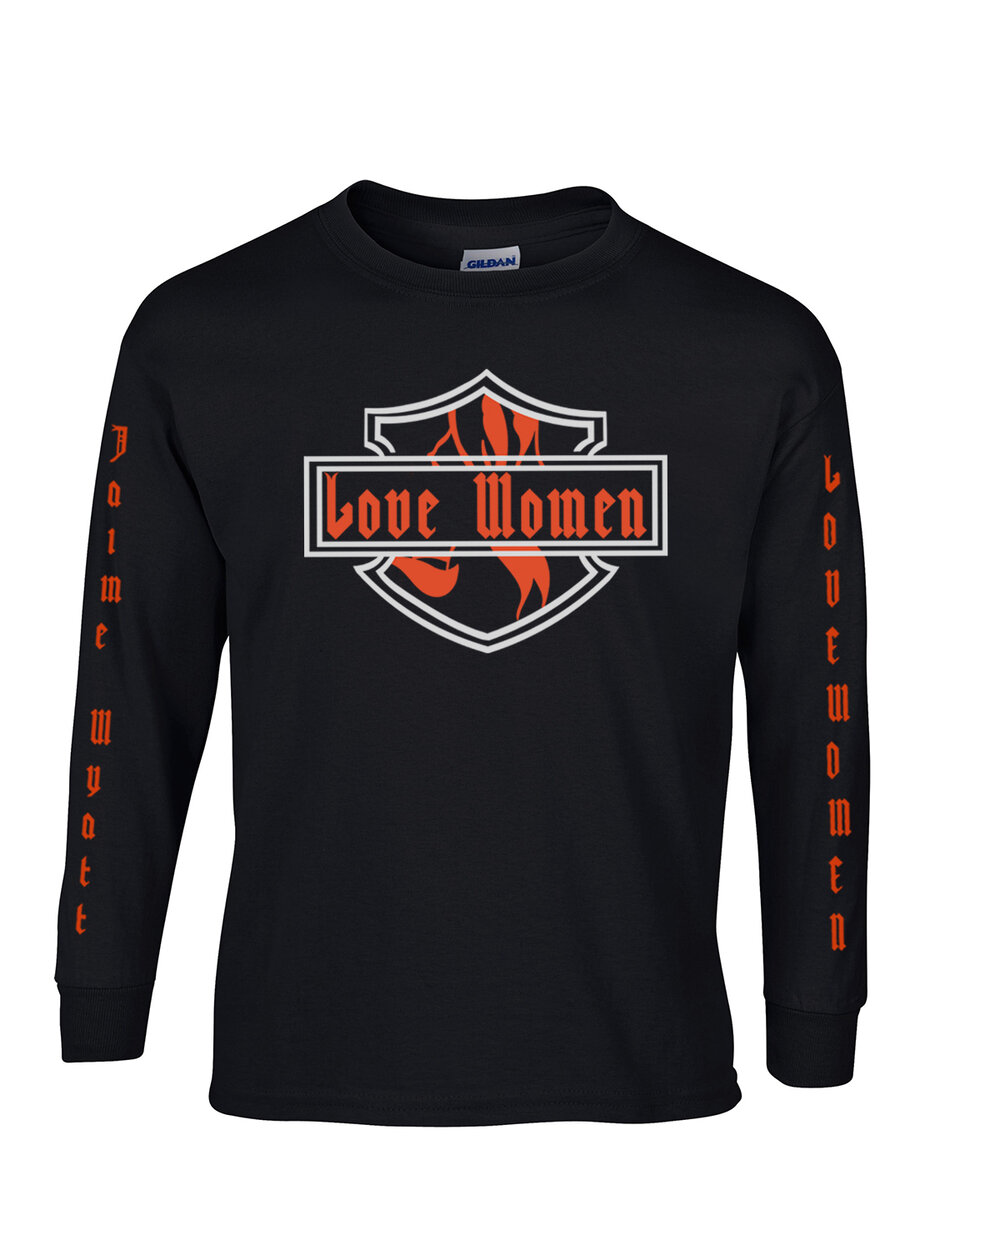 Sleeve Black Biker Shirt Love Women Black Biker Jaime Wyatt